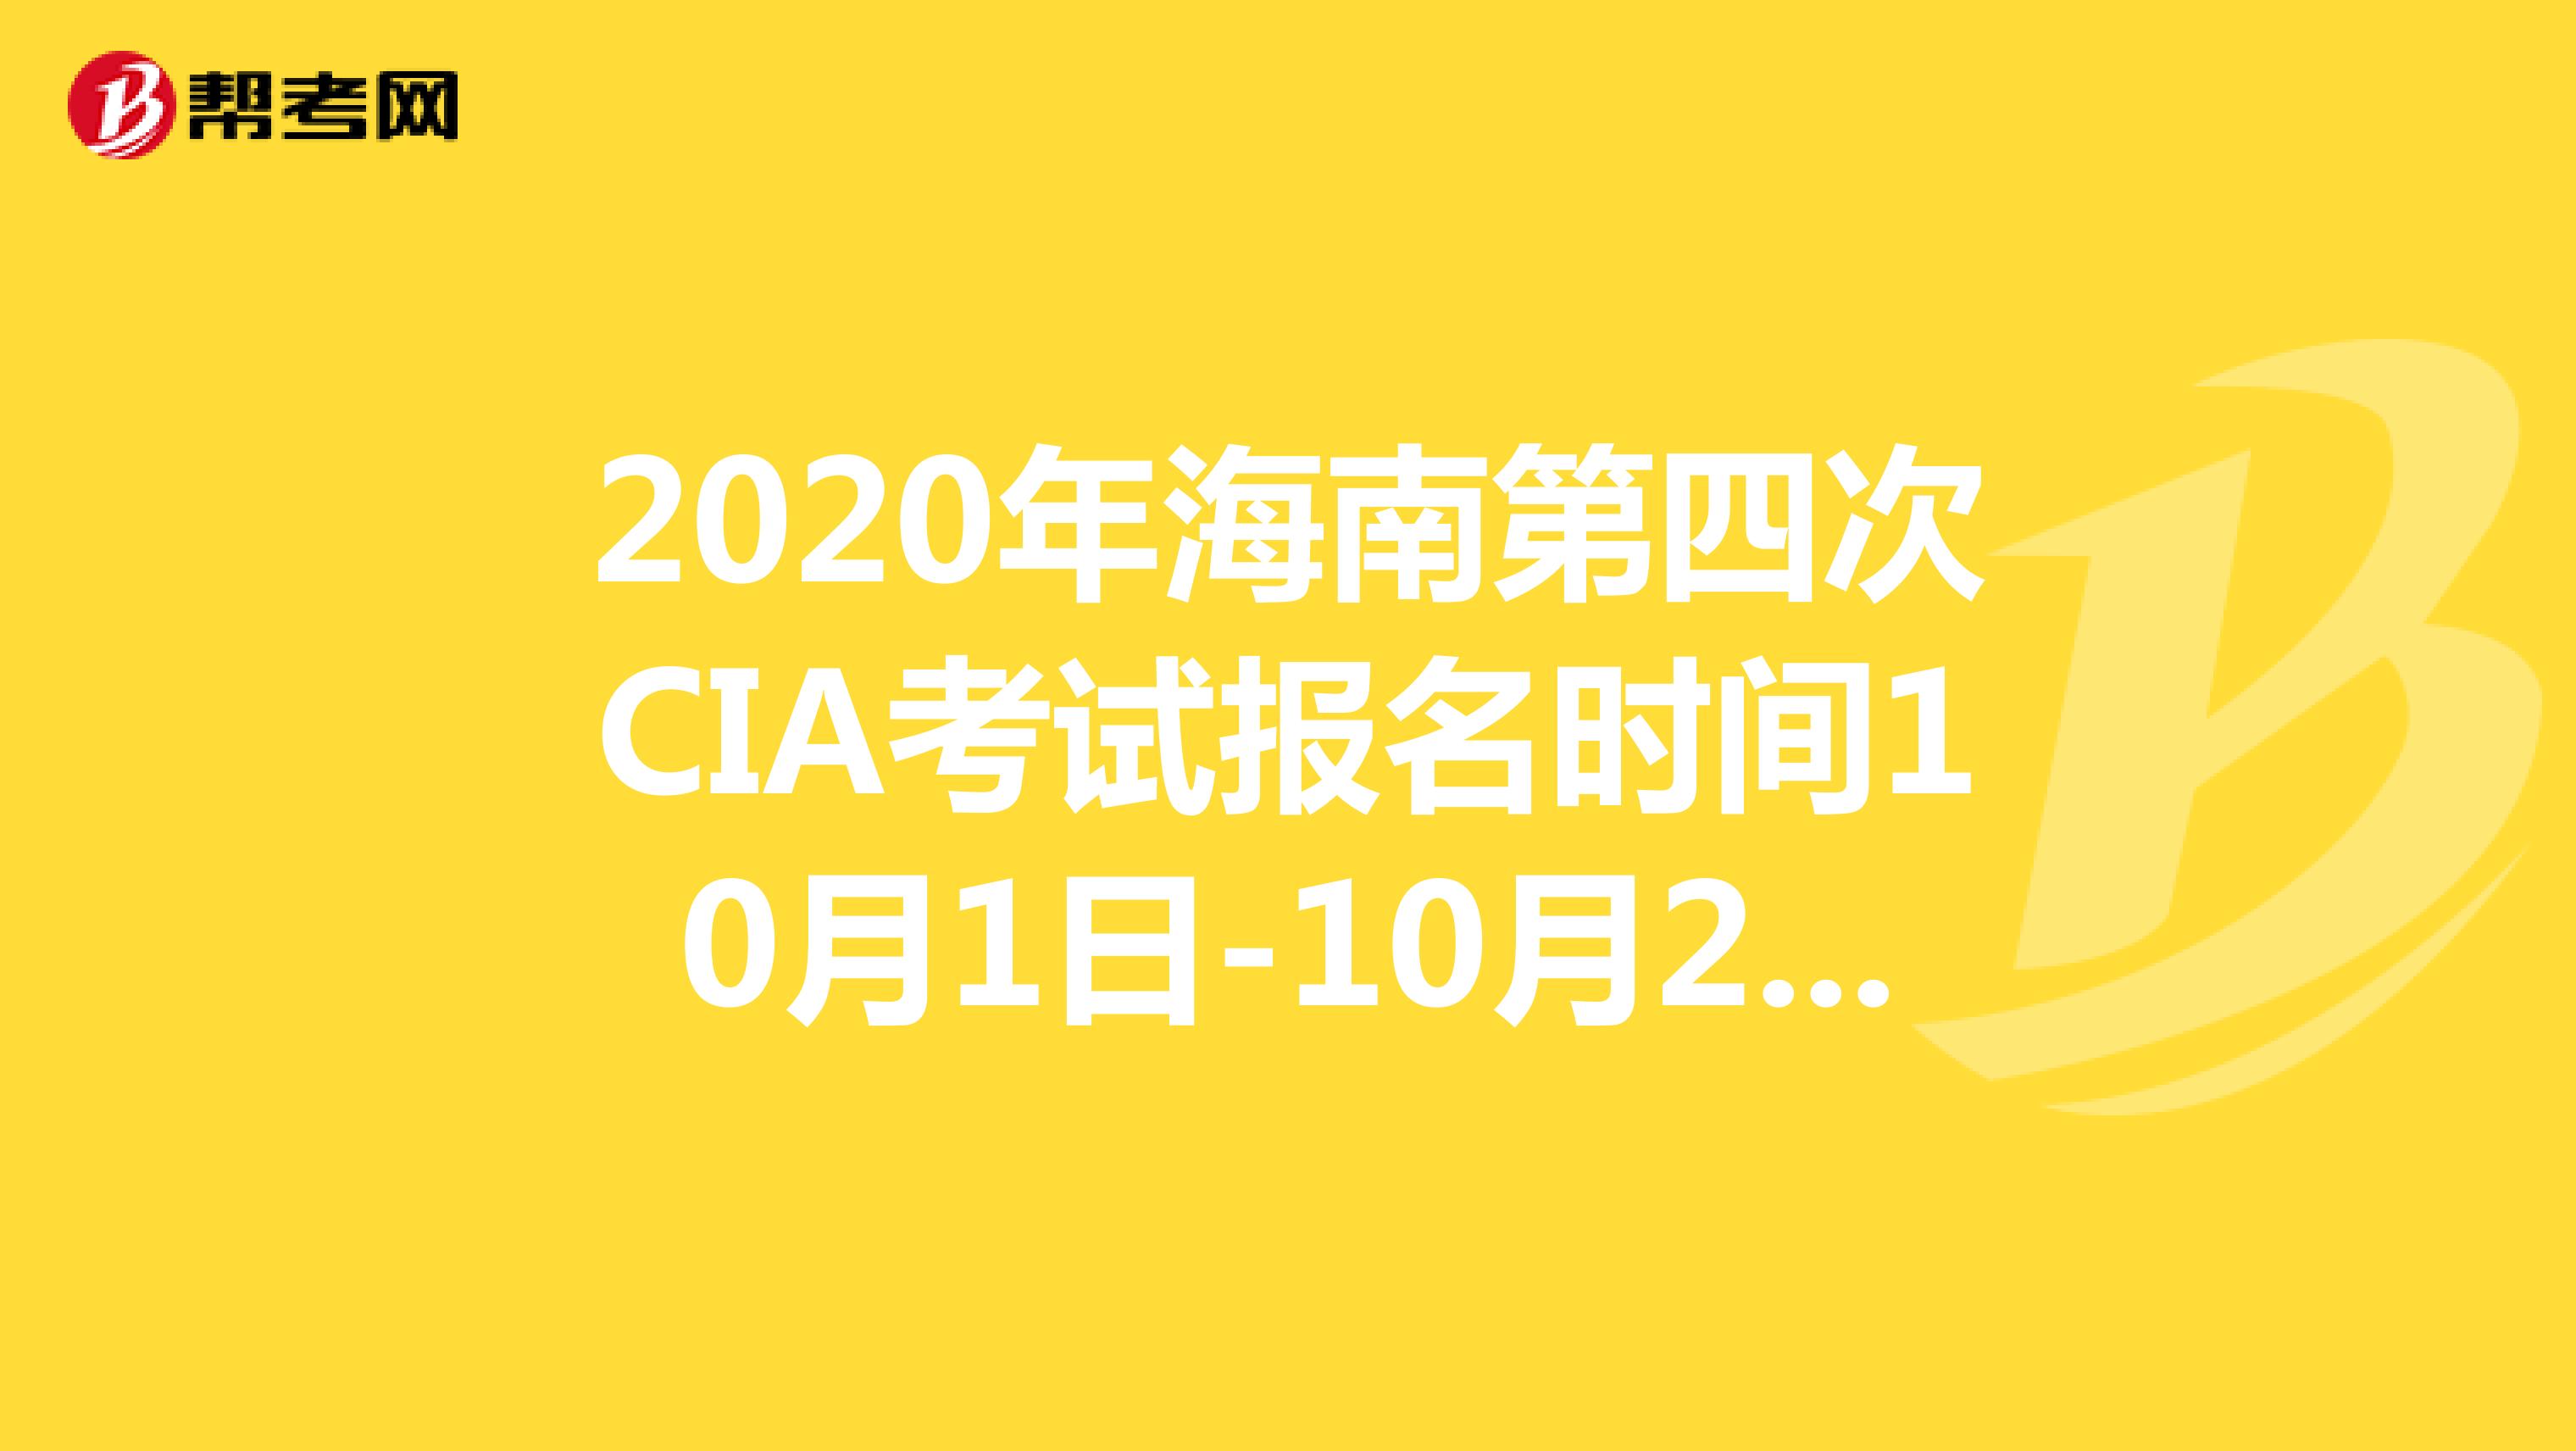 2020年海南第四次CIA考试报名时间10月1日-10月20日